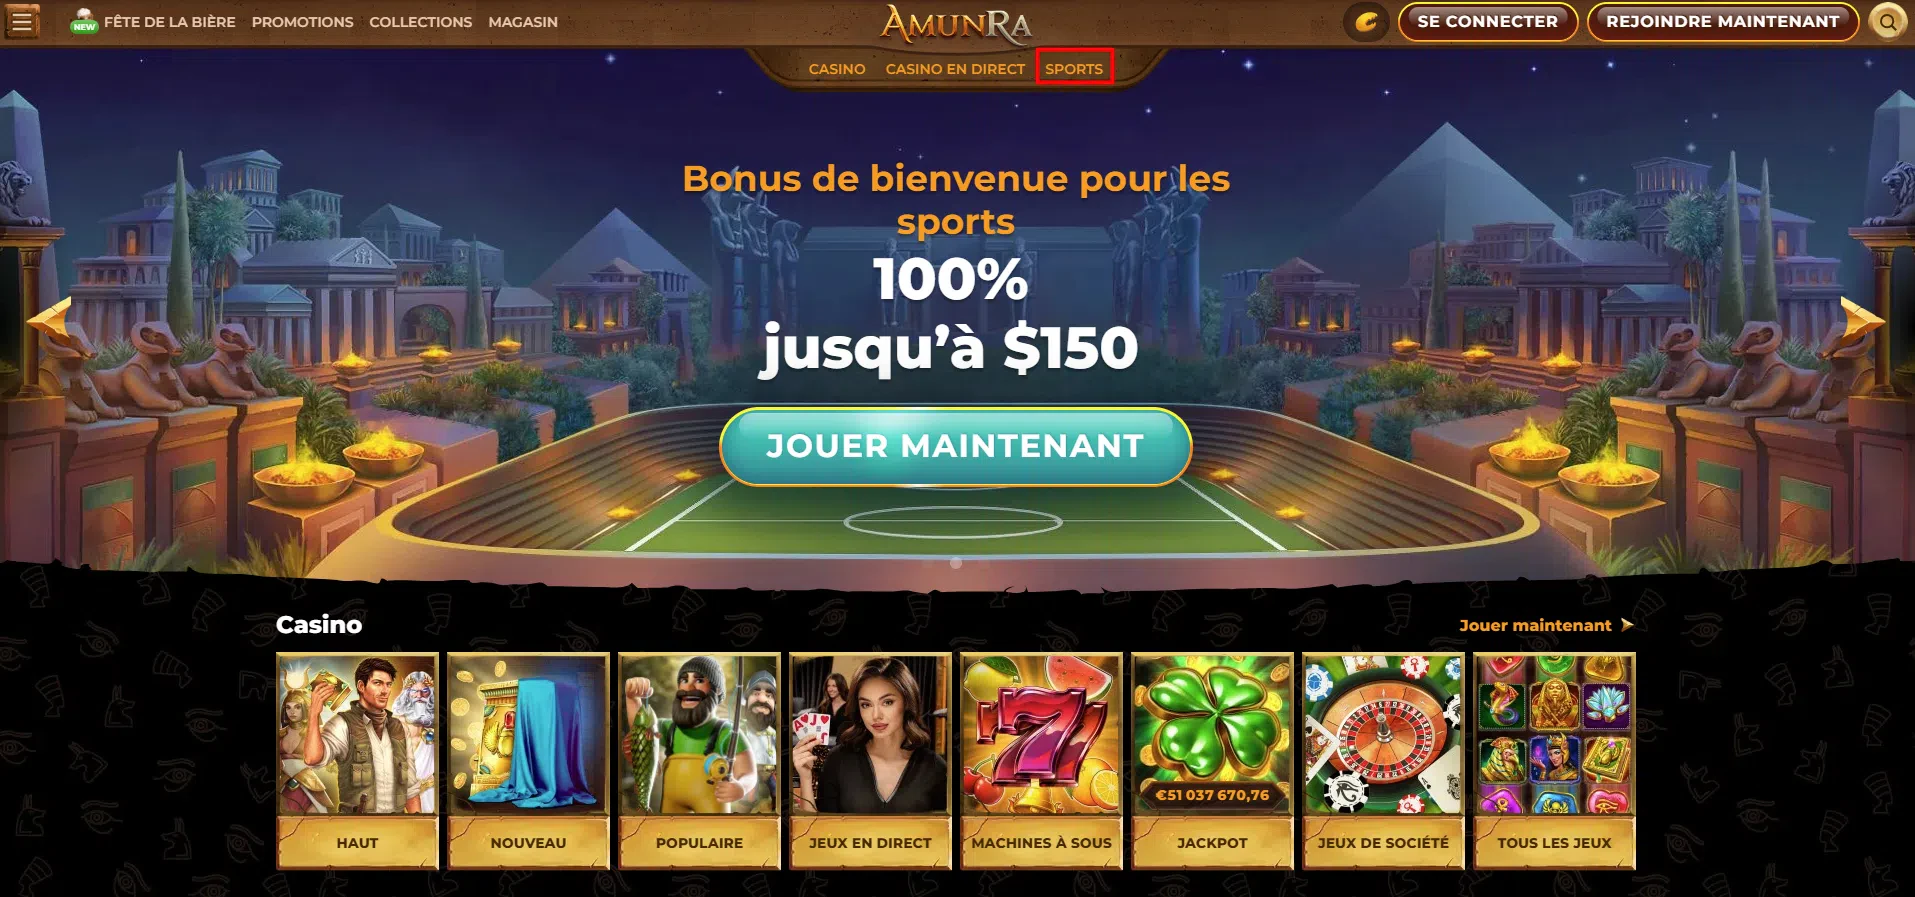 AmunrRa Casino